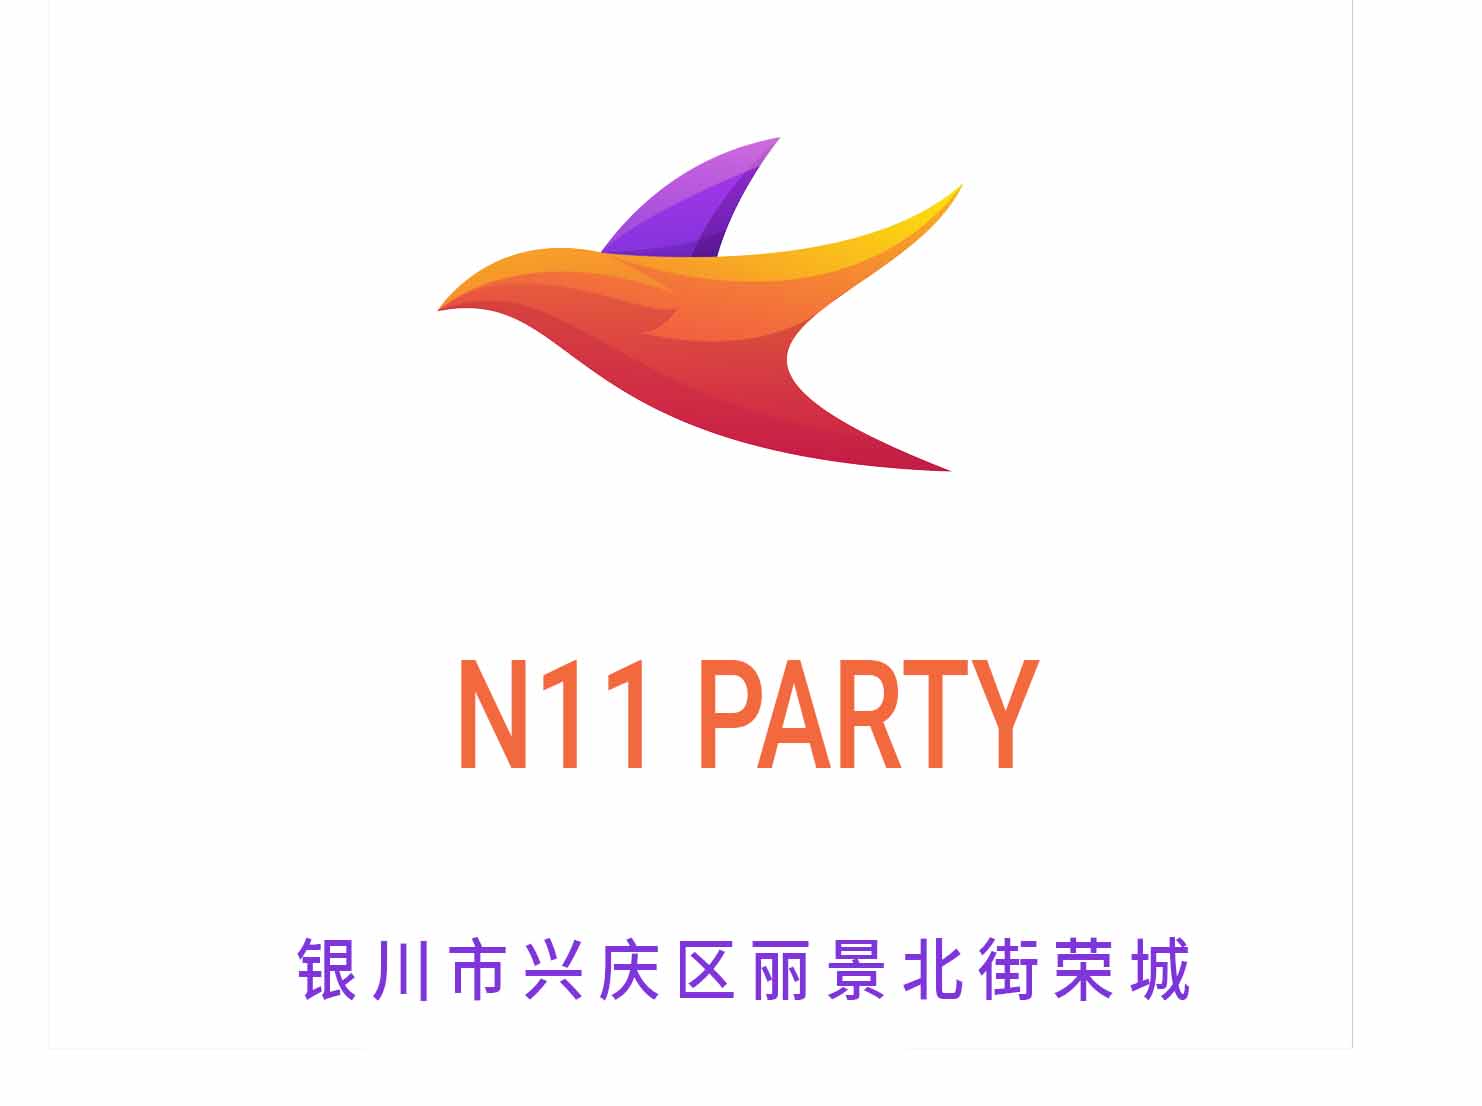 银川N11 PARTY夜总会